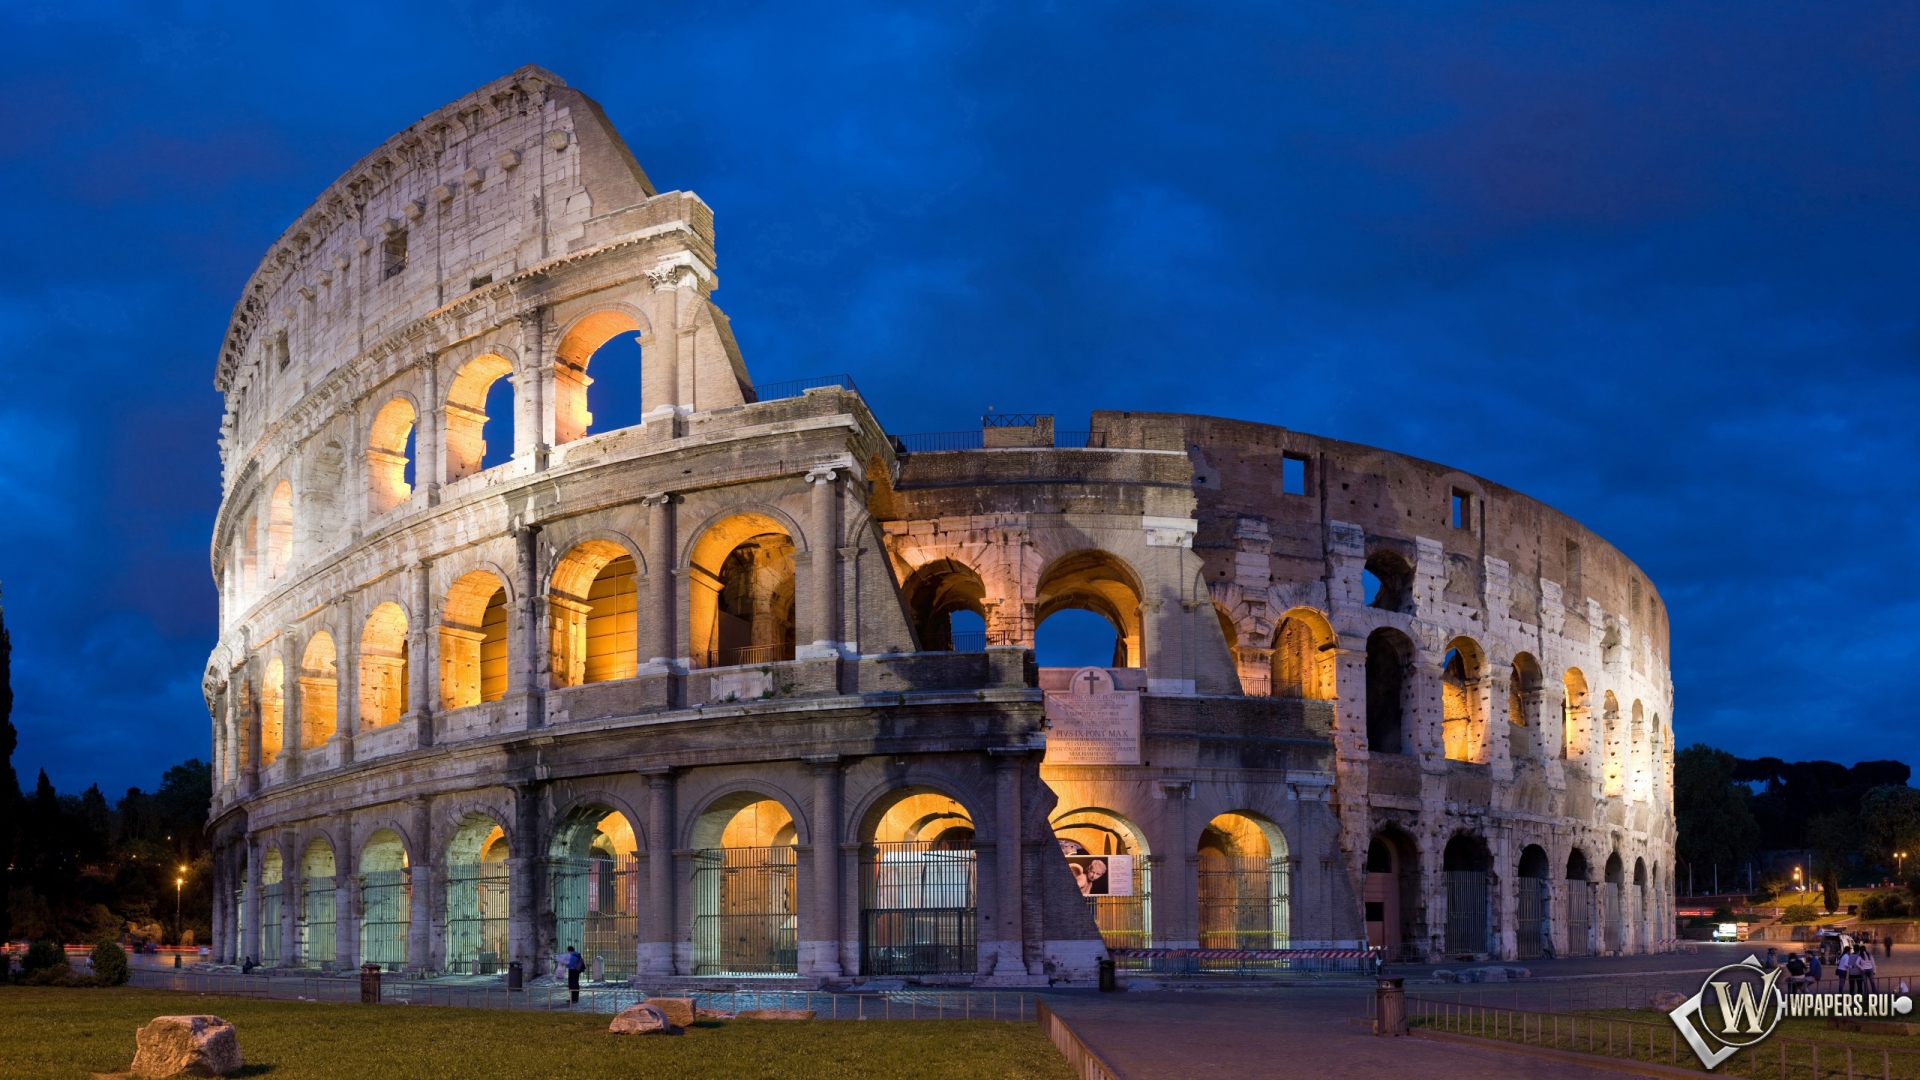 Colosseum in Rome 1920x1080